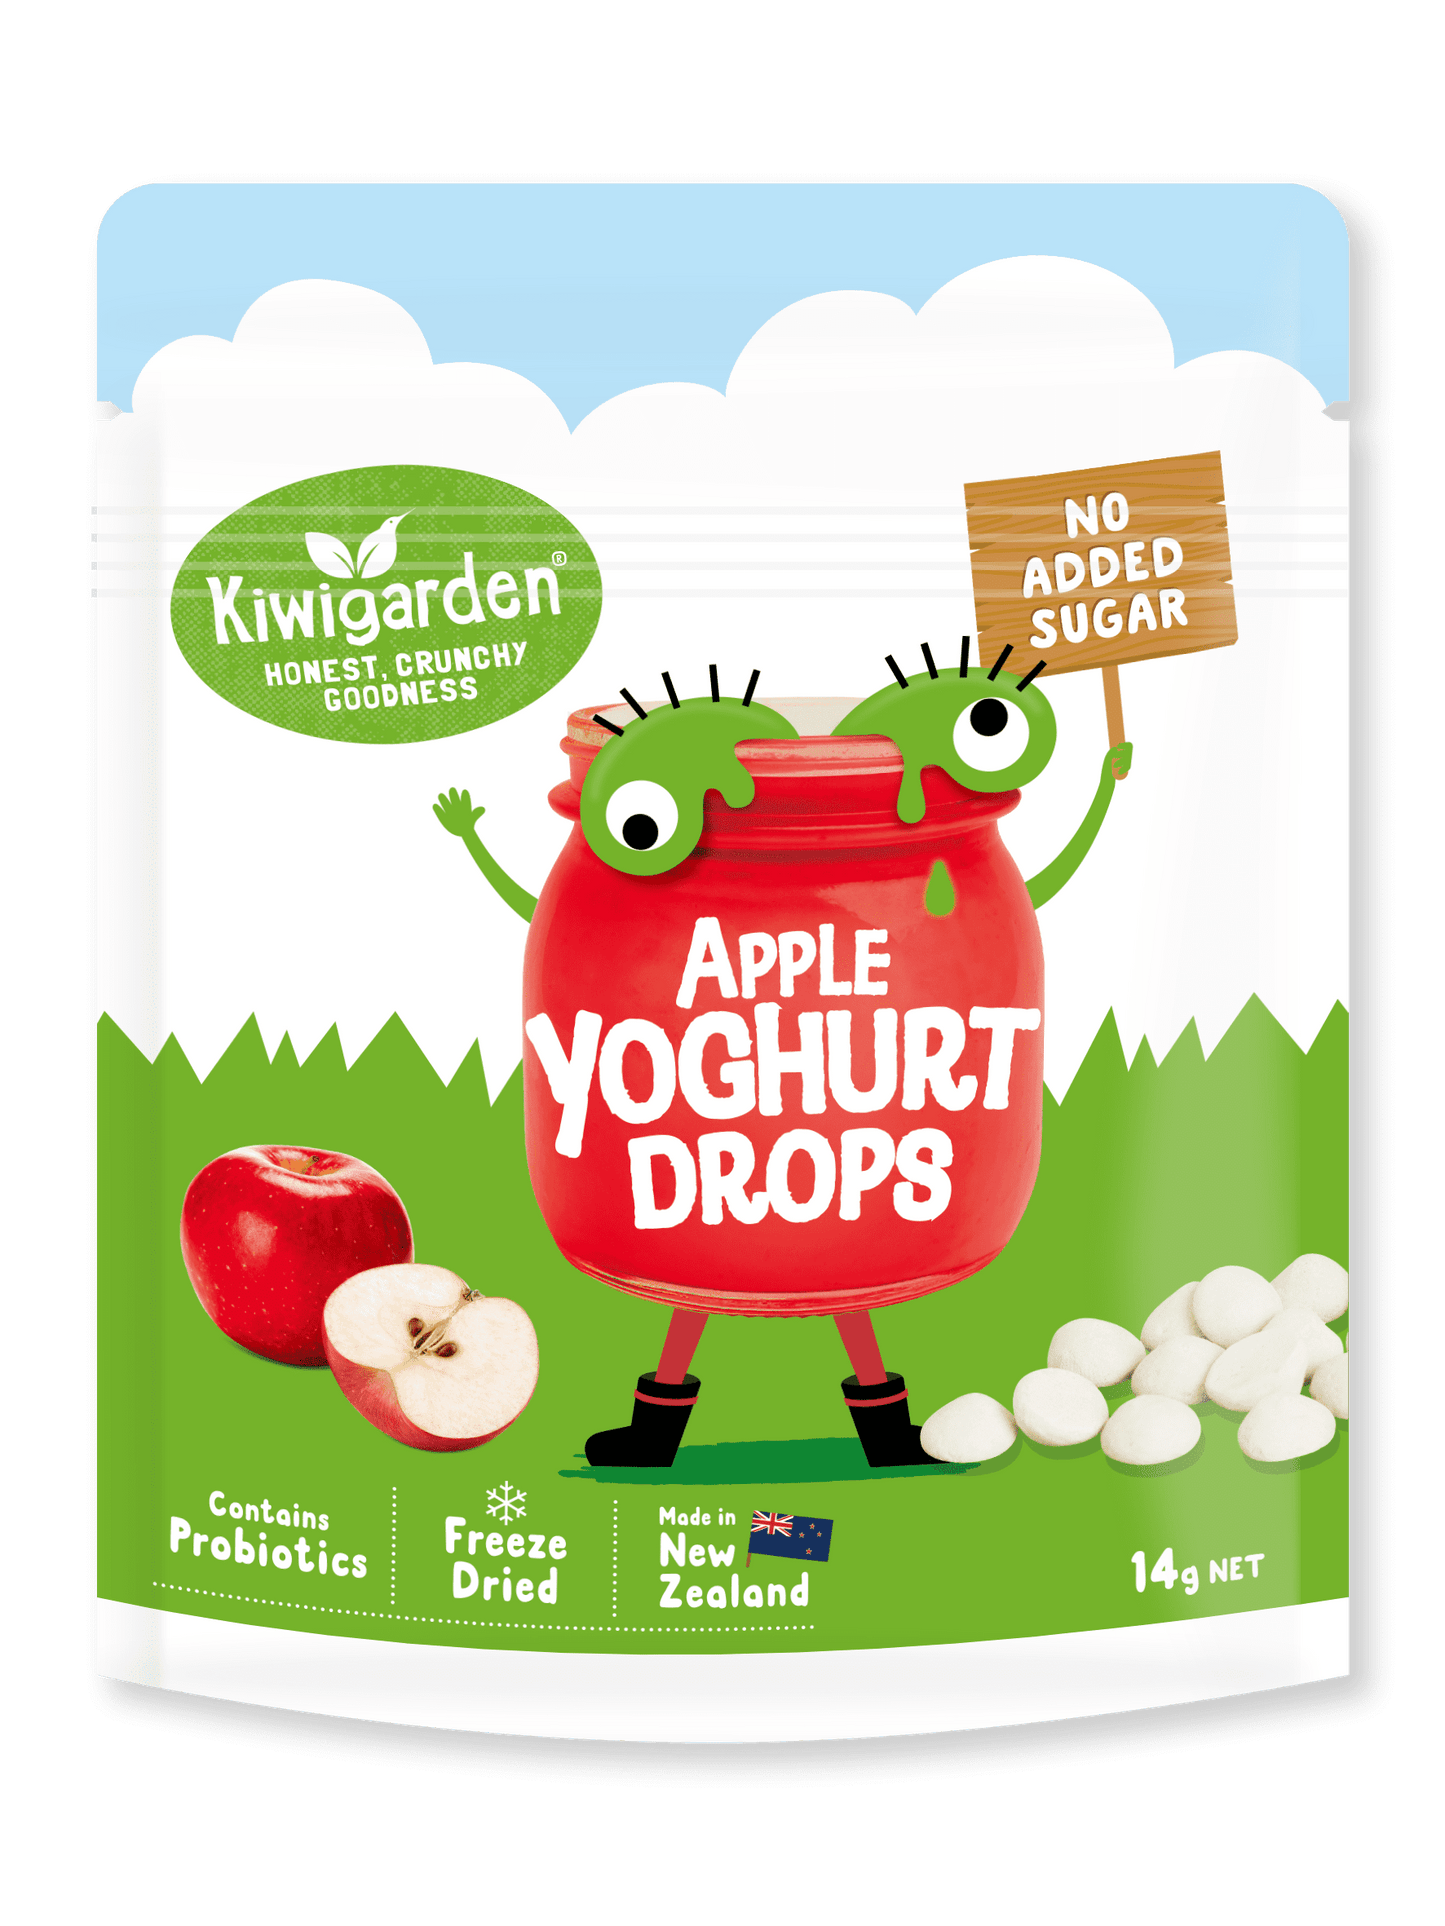 Apple Yoghurt Drops 14g - No added sugar